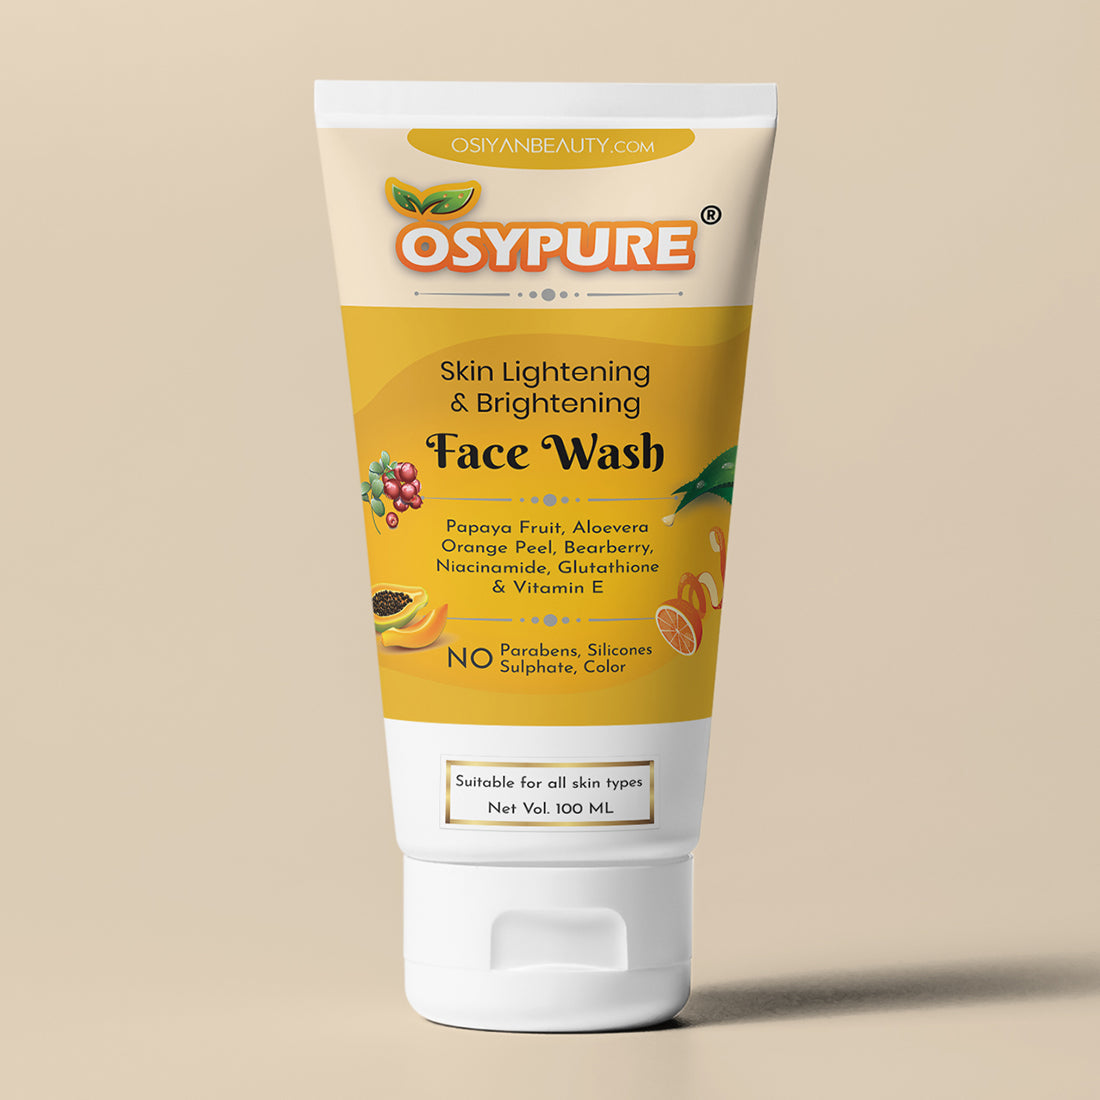 Osypure Skin Lightening & Brightening Face Wash